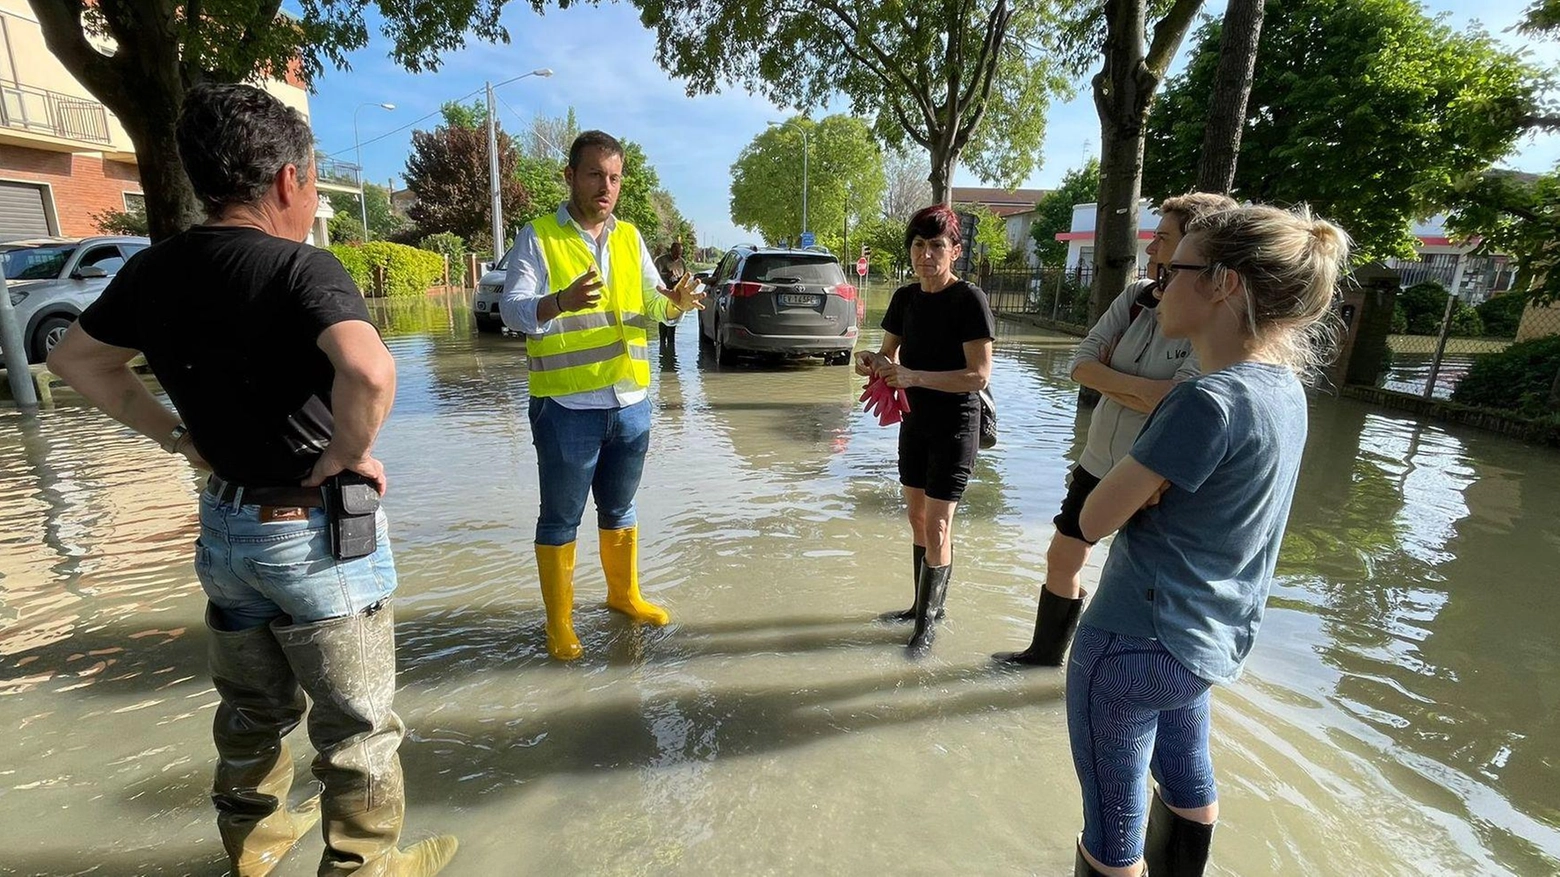 Tre metri d’acqua nei campi  Agricoltura in ginocchio  Il sindaco a Spazzate  "Al lavoro per la normalità"